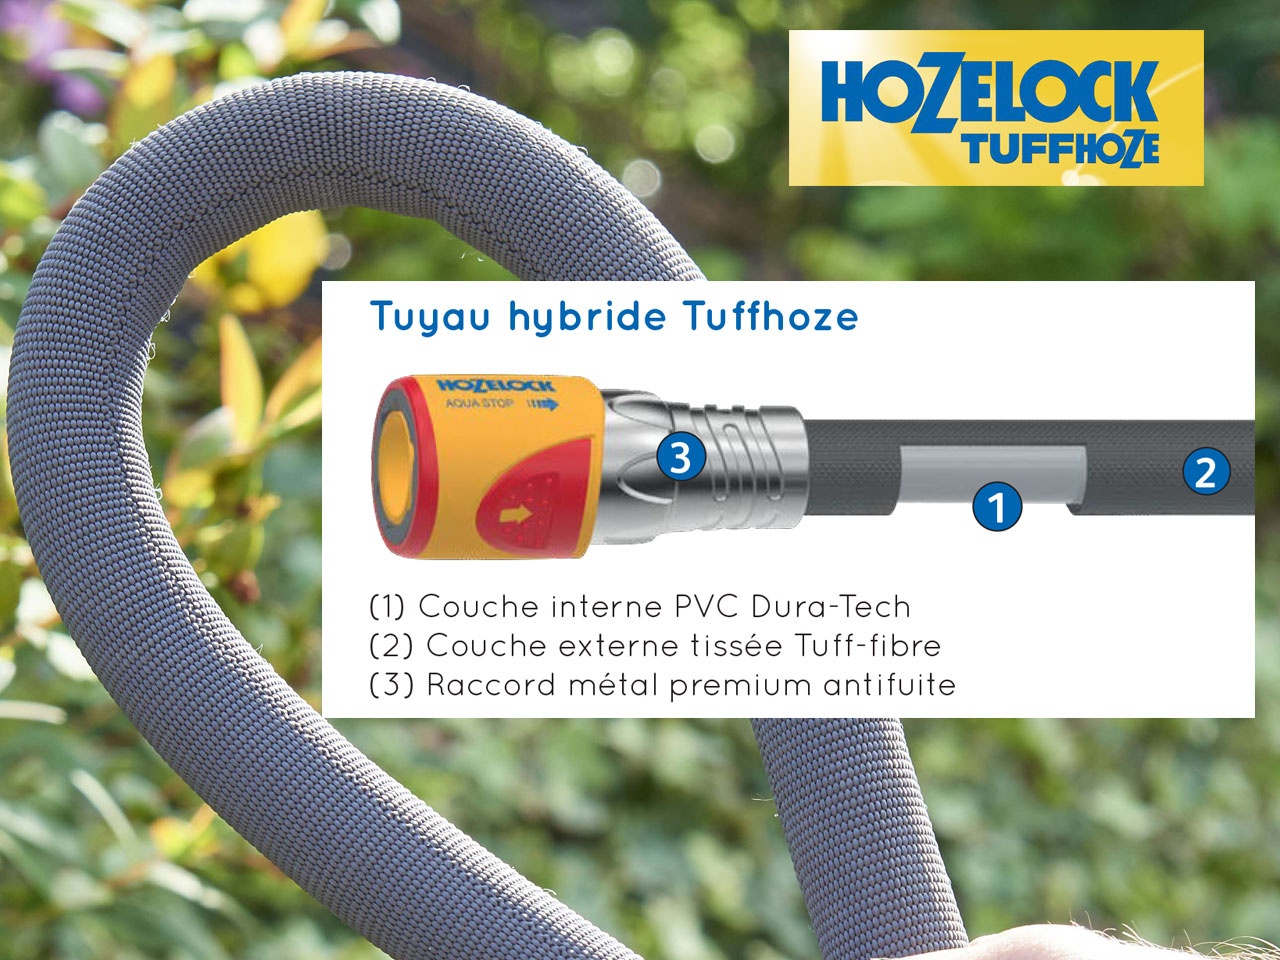 HOZELOCK - Tuyau d'Arrosage Hybride Tuffhoze 35 M : Extrêmement Flexible,  Technologie Tissée Tuff-Fibre, Compatible Nettoyeur Haute Pression (40